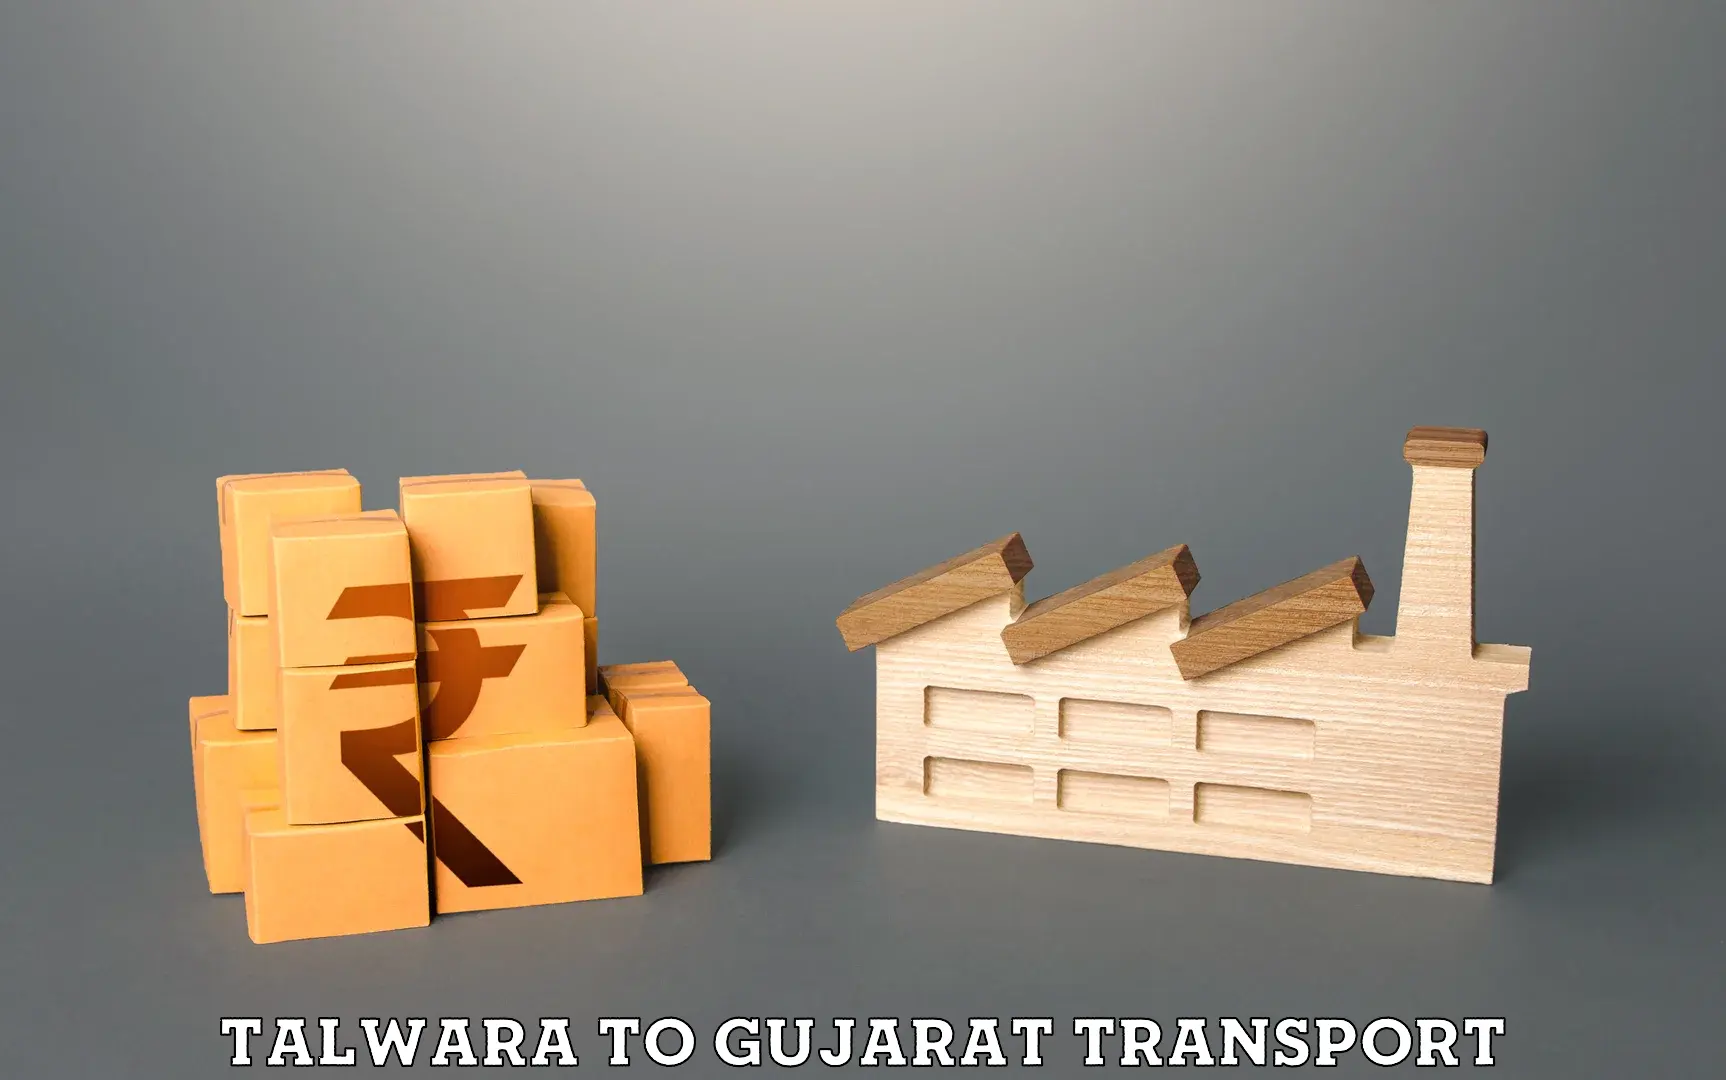 Cycle transportation service Talwara to Gujarat